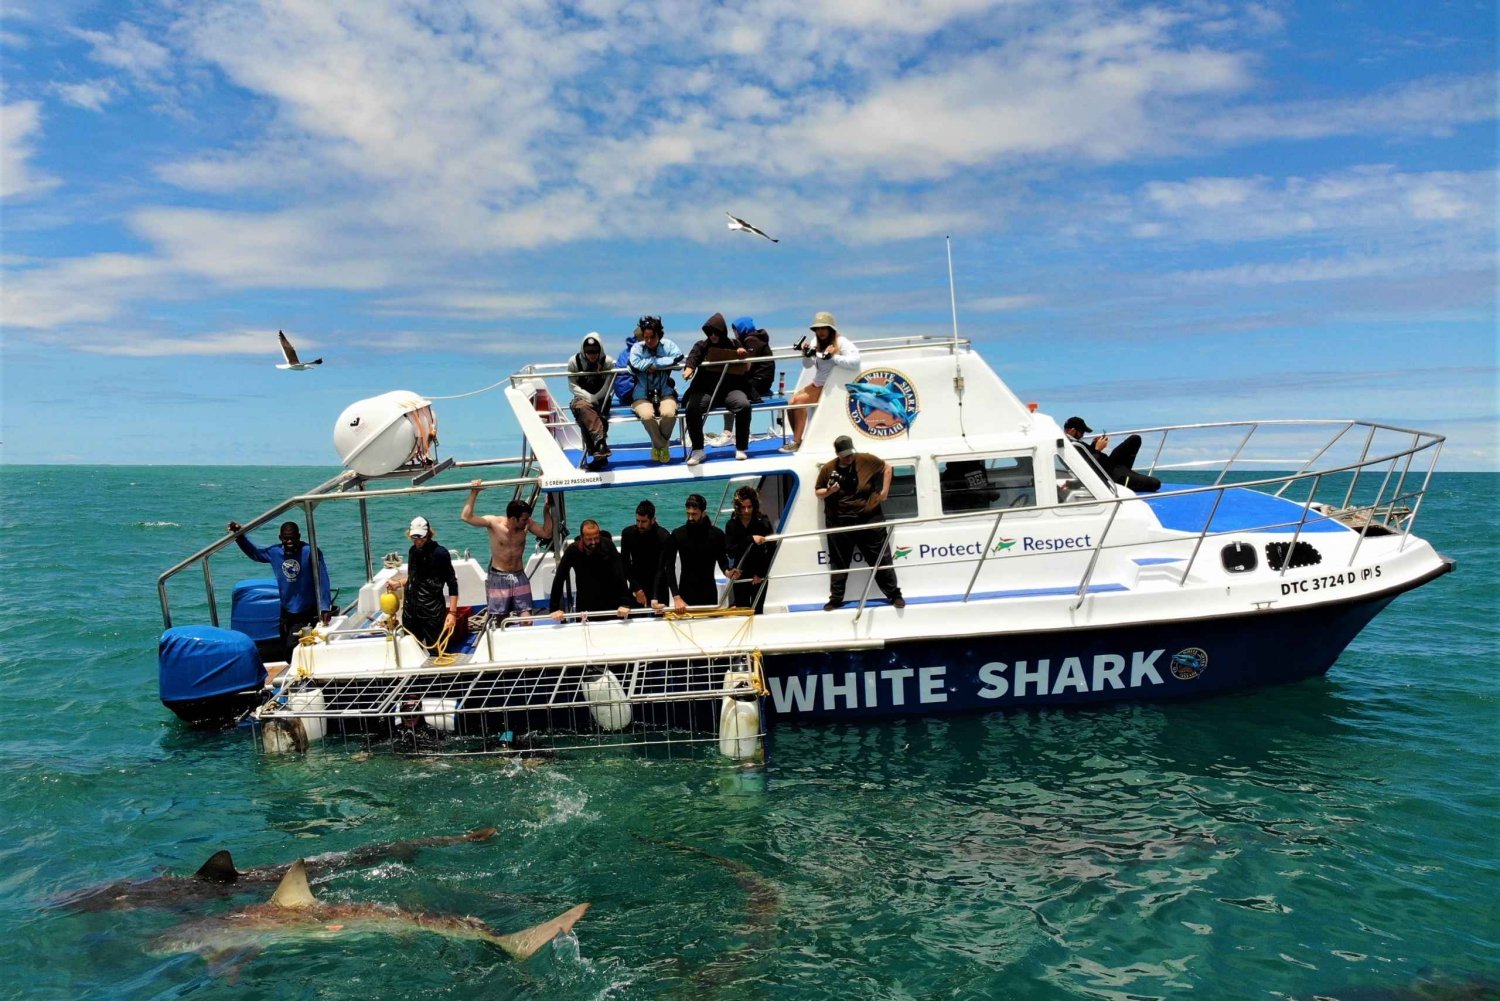 Gansbaai: Kooiduiken met haaien en bekijken aan boord